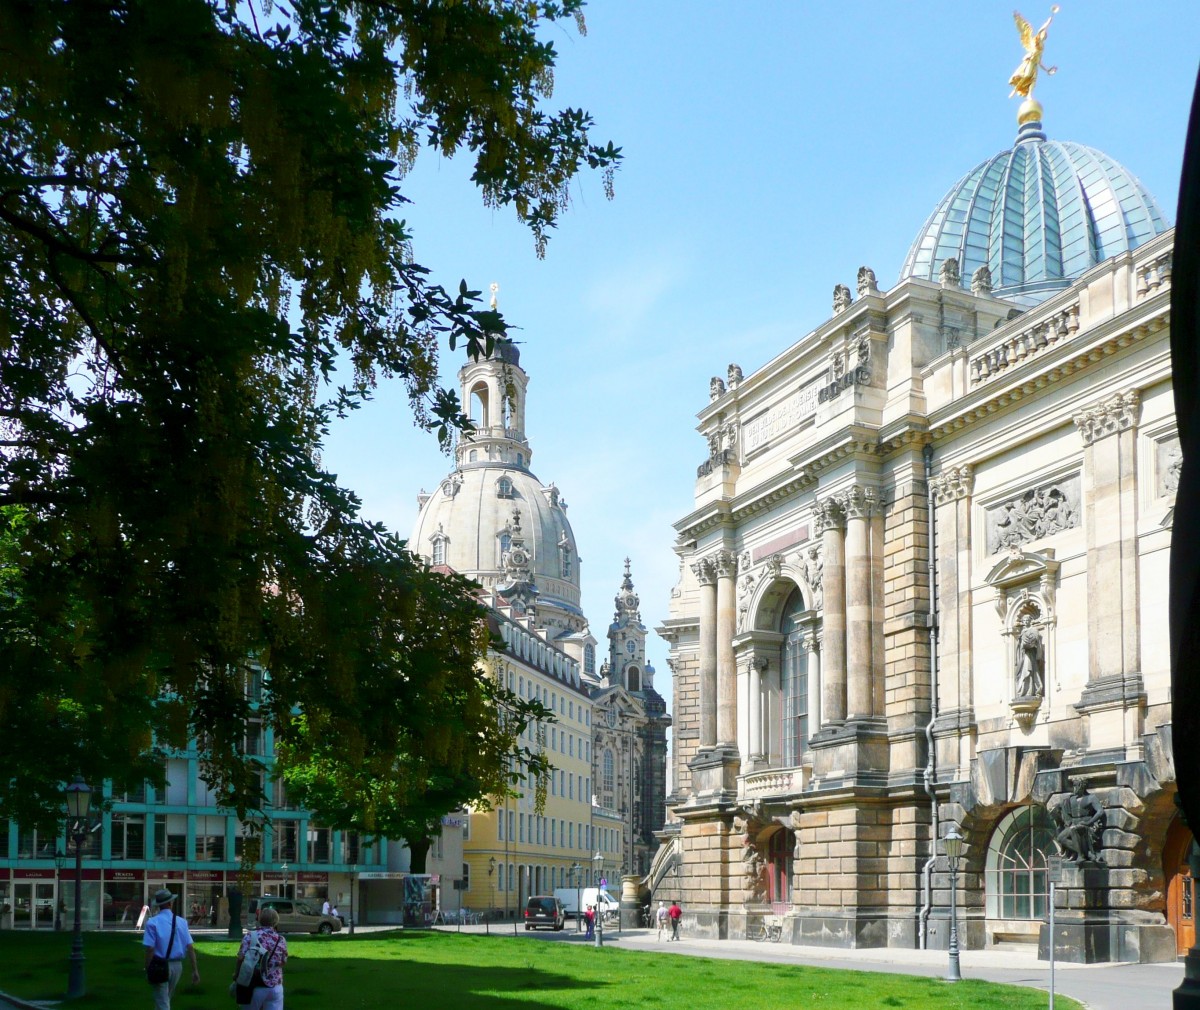 Dresden - Ein Blick, vorbei an der prachtvollen Seitenfassade des Kunstakademie, im Stil des Historismus von Lipsius 1891-1894 errichtet, - im Hintergrund der Turm der Frauenkirche.
Aufgenommen im Mai 2012.